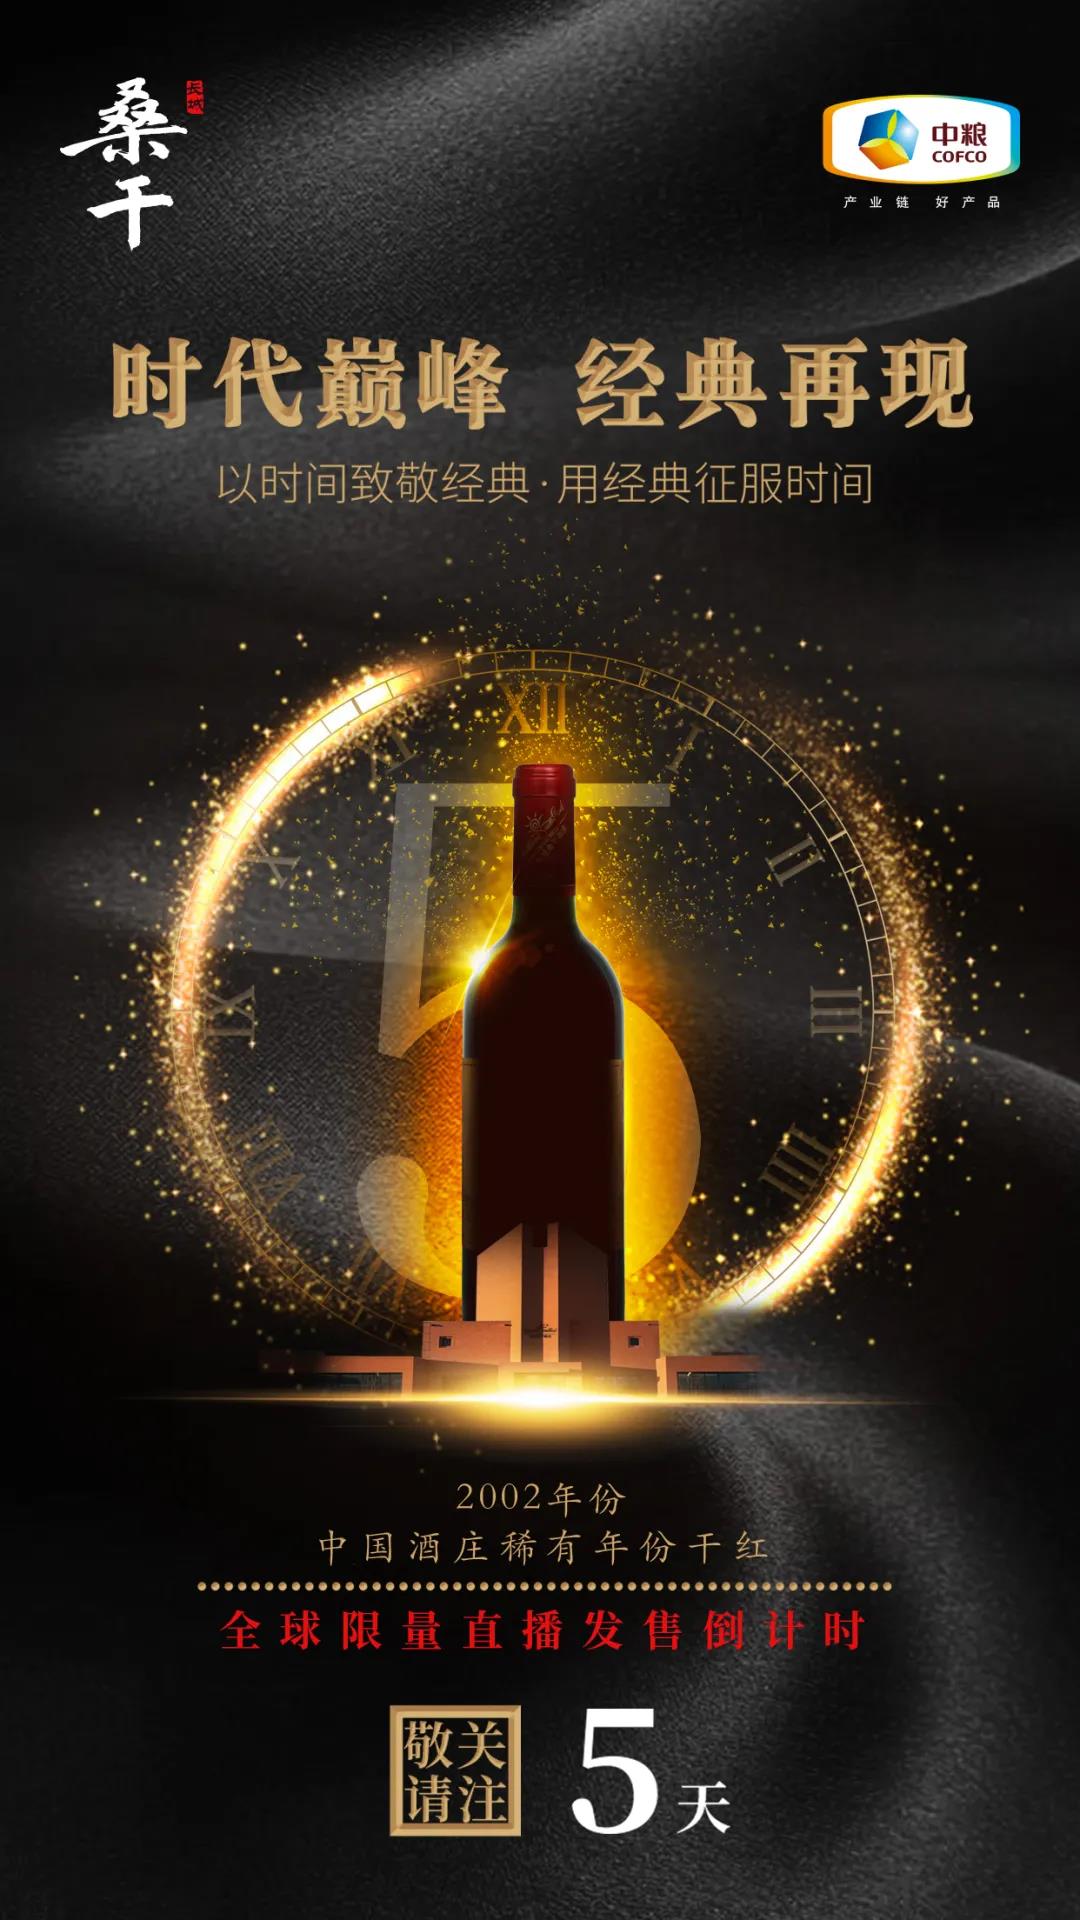 长城酒庄酒创新模式暨桑干酒庄2002产品限量发售会，即将震撼上线